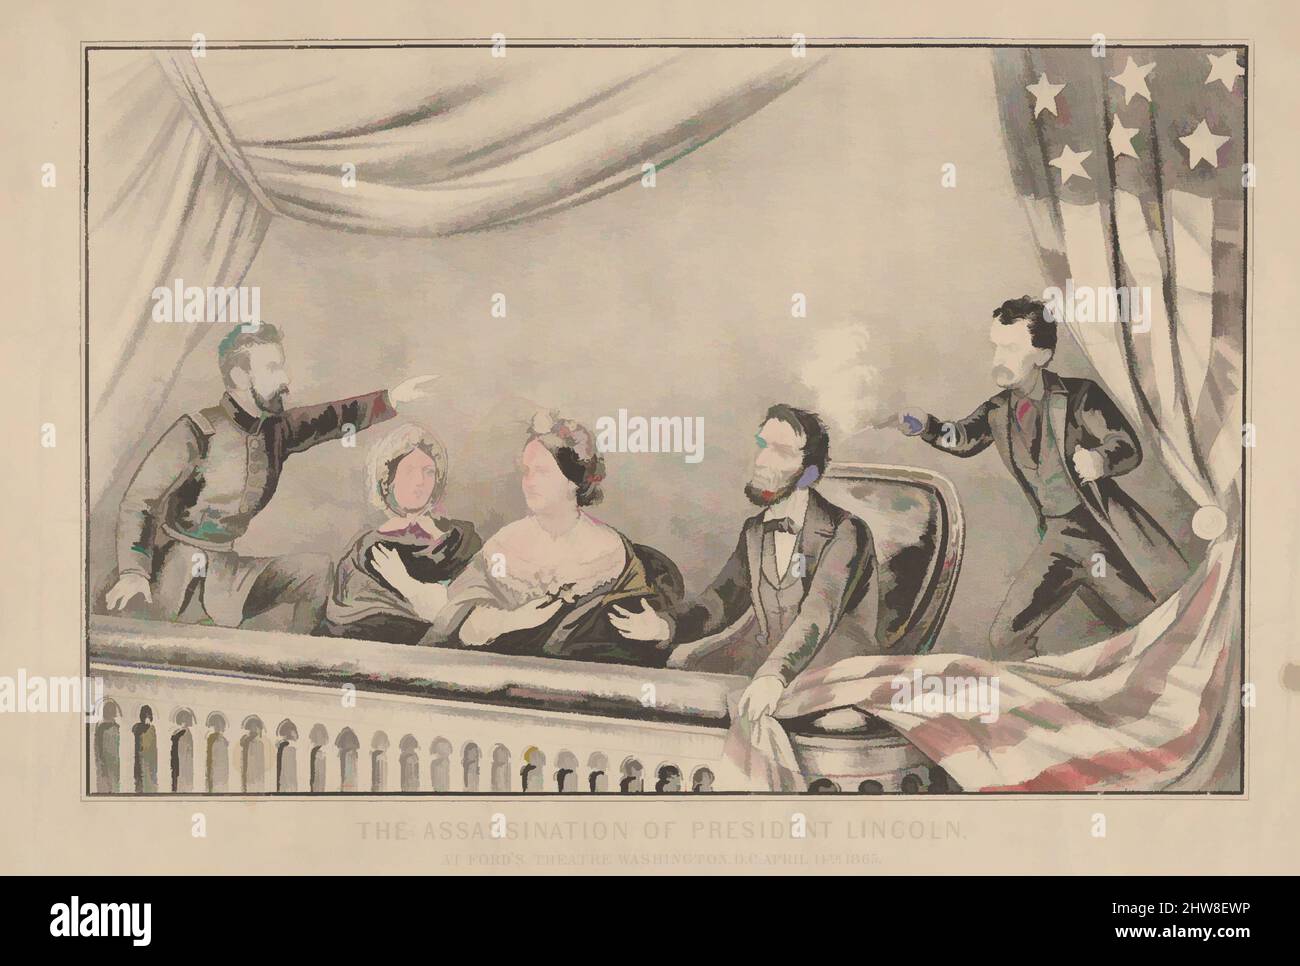 Kunst inspiriert durch die Attentat auf Präsident Lincoln im Ford's Theatre, Washington D.C., 14.. April 1865, 1865, Handkolorierte Lithographie, Bild: 7 13/16 × 12 1/8 Zoll (19,8 × 30,8 cm), Drucke, Diese Lithographie zeichnet den schockierenden Moment auf, als Abraham Lincoln von John Wilkes gedreht wurde, Klassische Werke, die von Artotop mit einem Schuss Moderne modernisiert wurden. Formen, Farbe und Wert, auffällige visuelle Wirkung auf Kunst. Emotionen durch Freiheit von Kunstwerken auf zeitgemäße Weise. Eine zeitlose Botschaft, die eine wild kreative neue Richtung verfolgt. Künstler, die sich dem digitalen Medium zuwenden und die Artotop NFT erschaffen Stockfoto